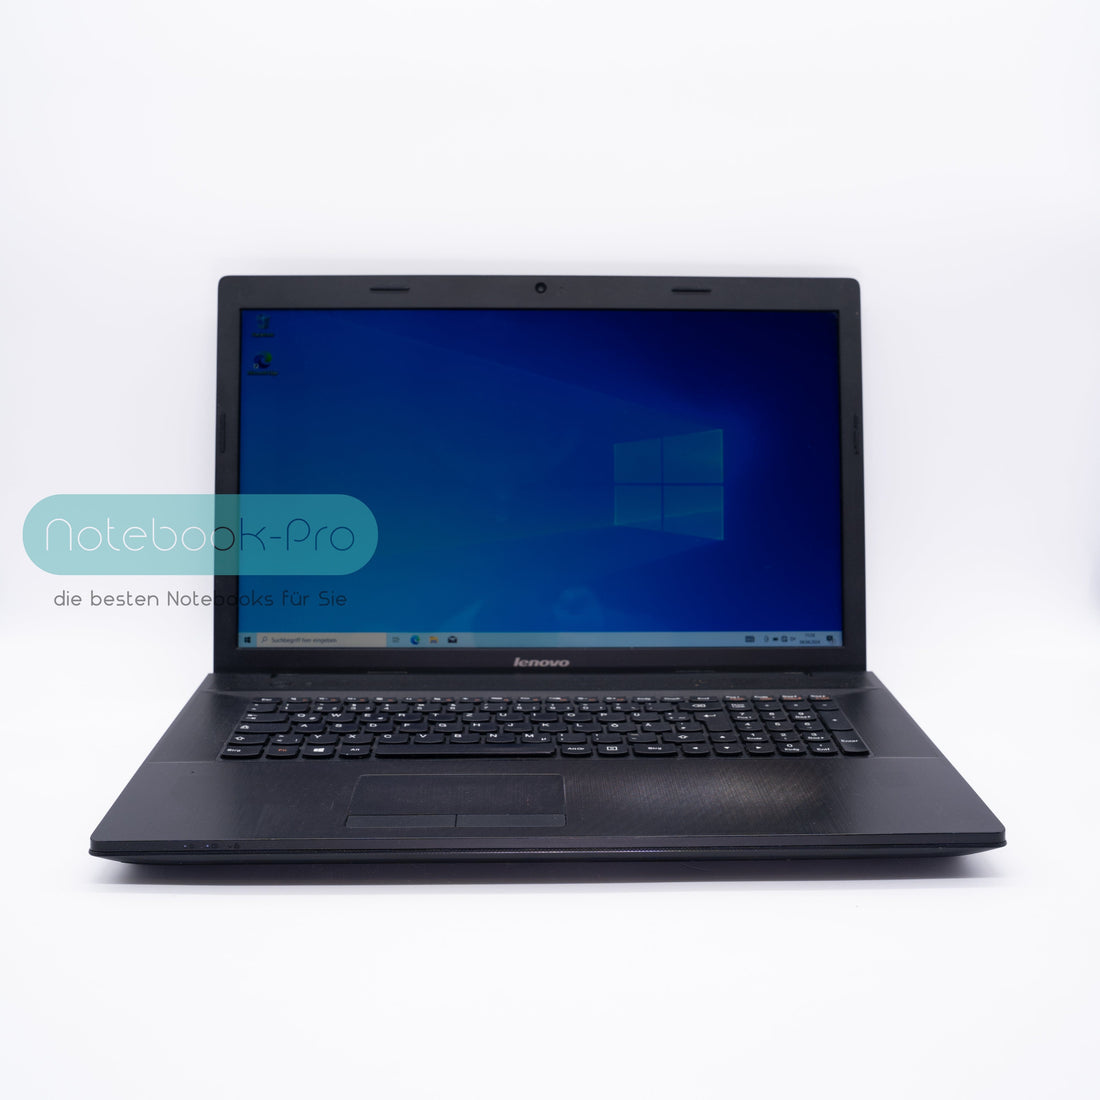 Lenovo IdeaPad G710 17,3 Zoll HD+ Display Intel Core i5-4200M 16GB RAM 1TB SSHD NVIDIA GeForce GT820M Laptops Notebook-Pro 